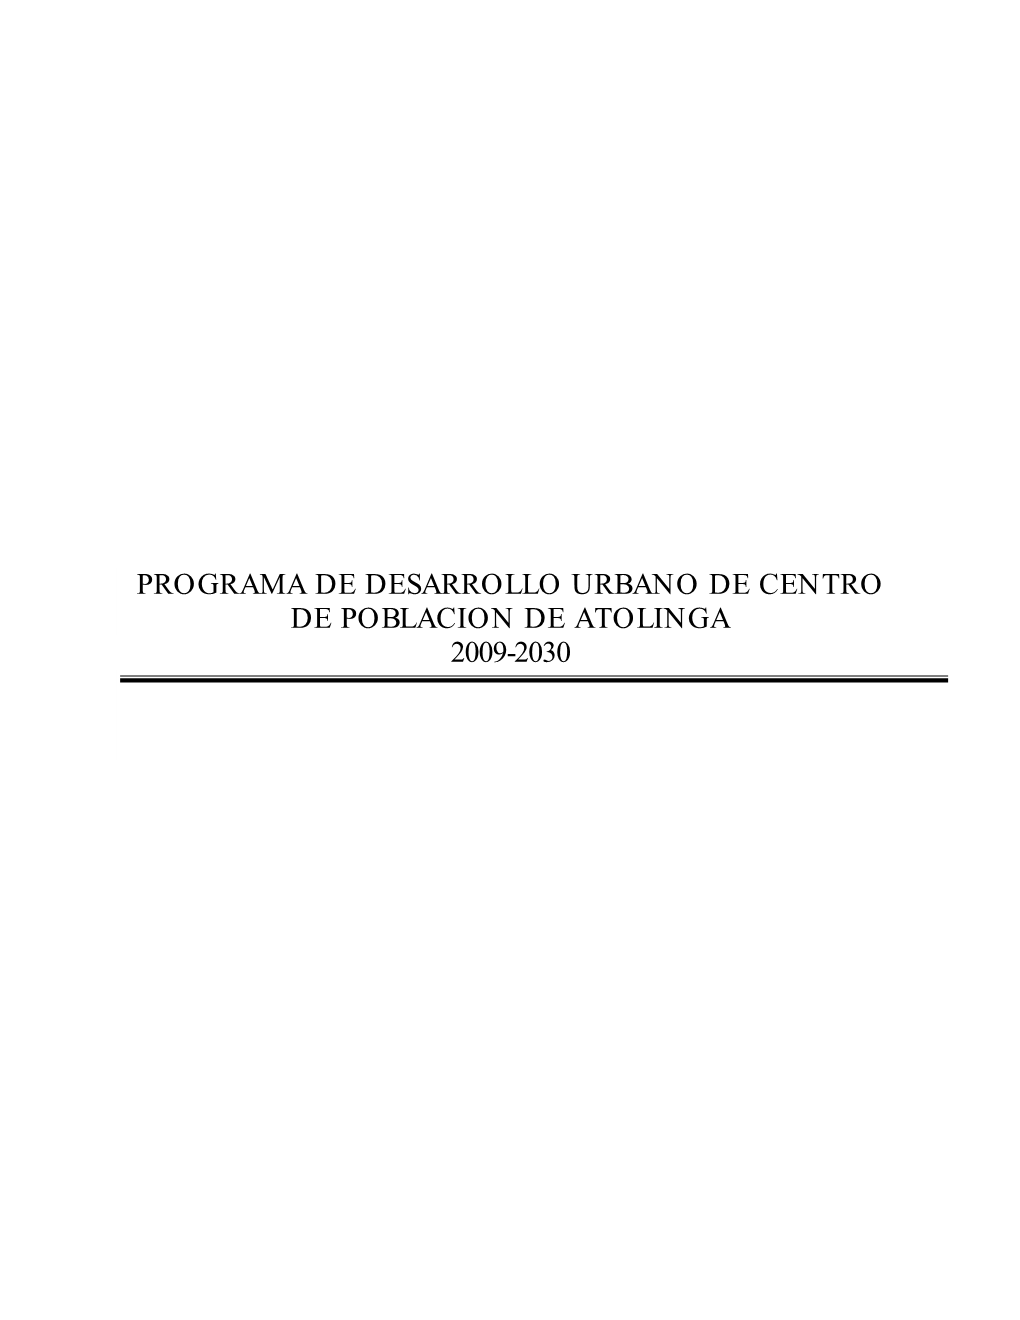 Programa De Desarrollo Urbano De Centro De Poblacion De Atolinga 2009-2030